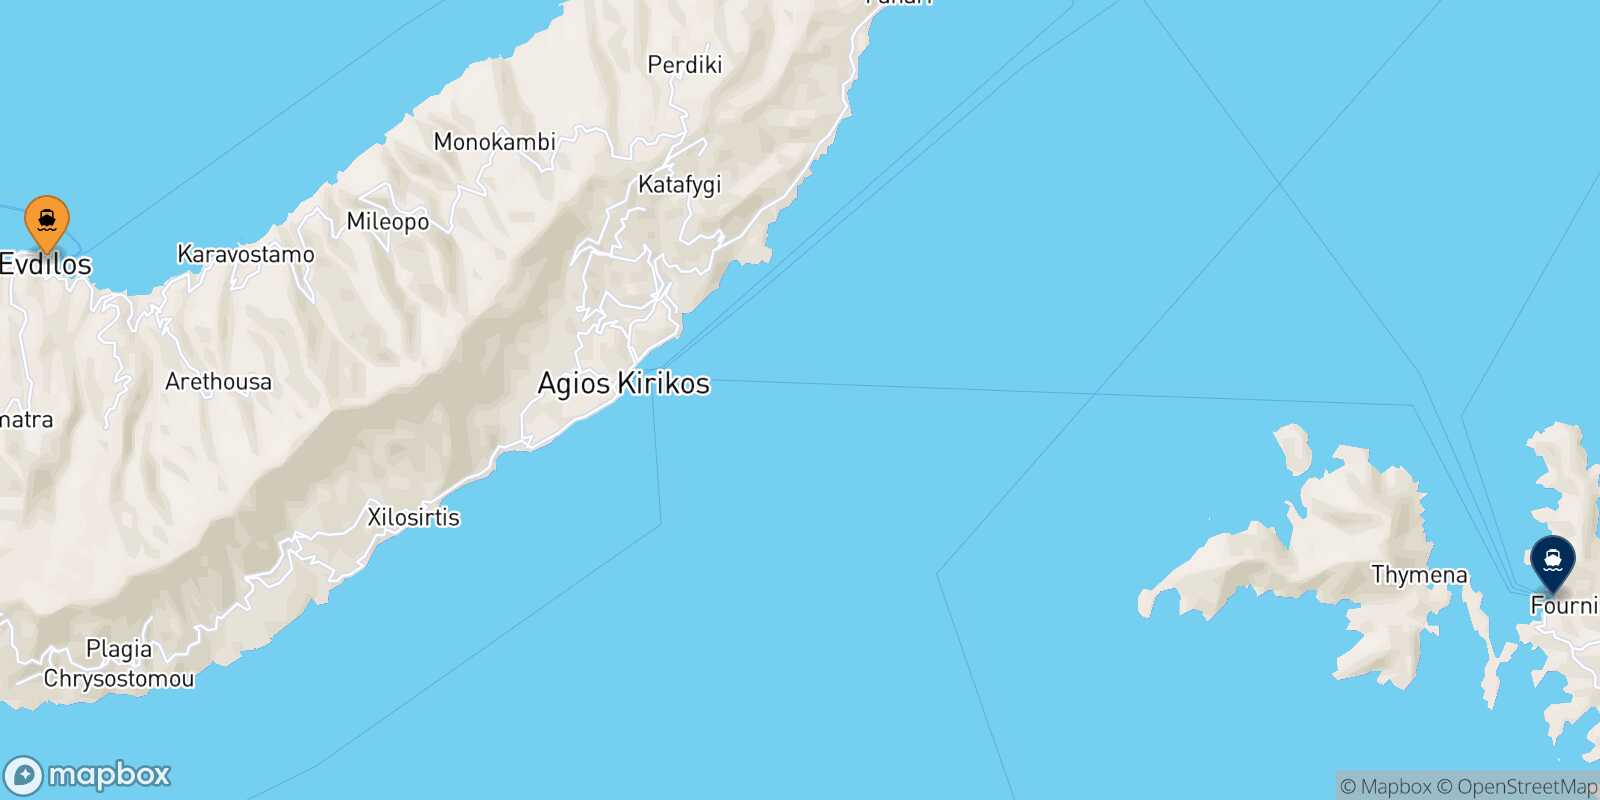 Agios Kirikos (Ikaria) Fourni route map